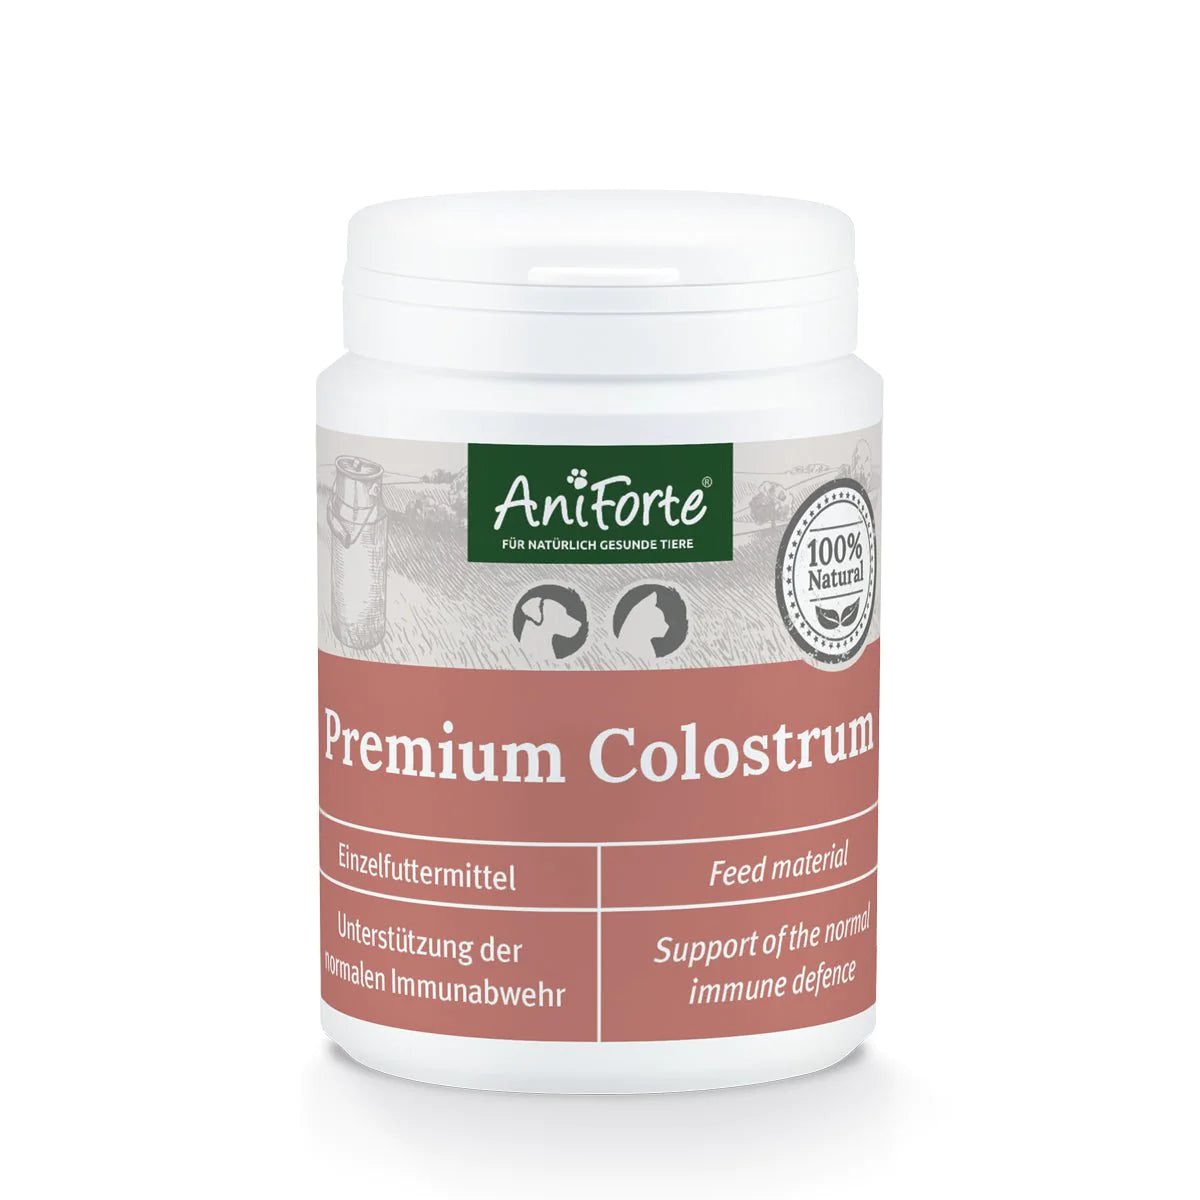 Aniforte-Premium-Colostrum